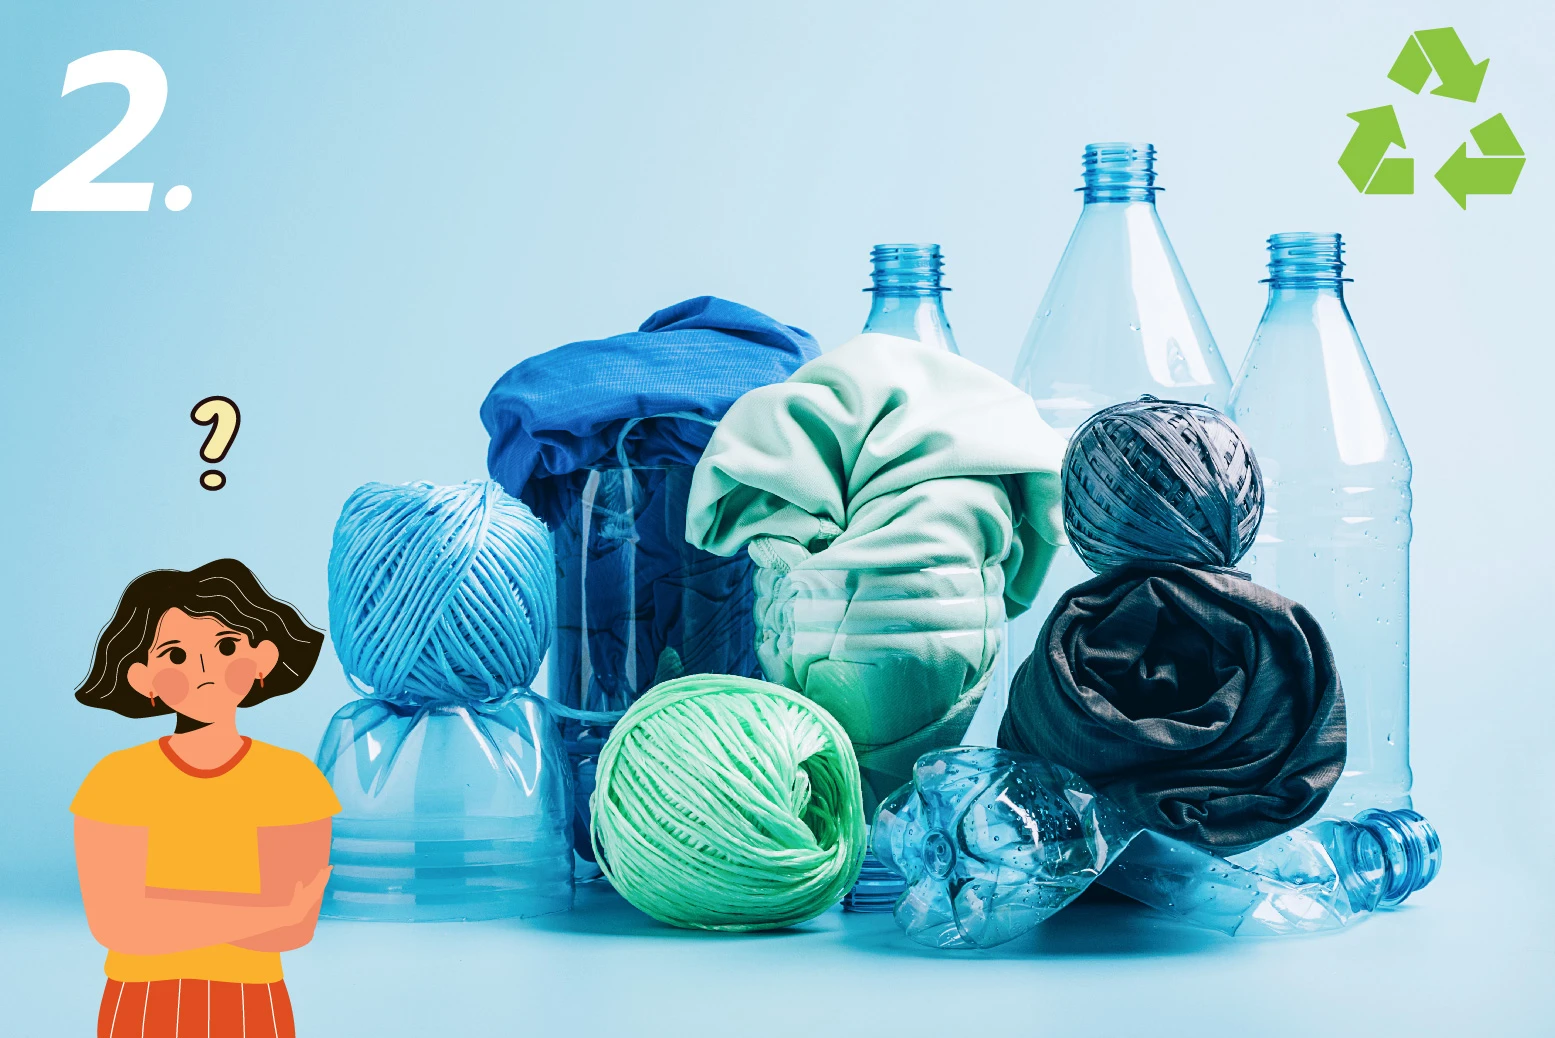 ผ้าโพลีเอสเตอร์ รีไซเคิล ลดผลกระทบต่อสิ่งแวดล้อม ผลิตจากขวดพลาสติก PET